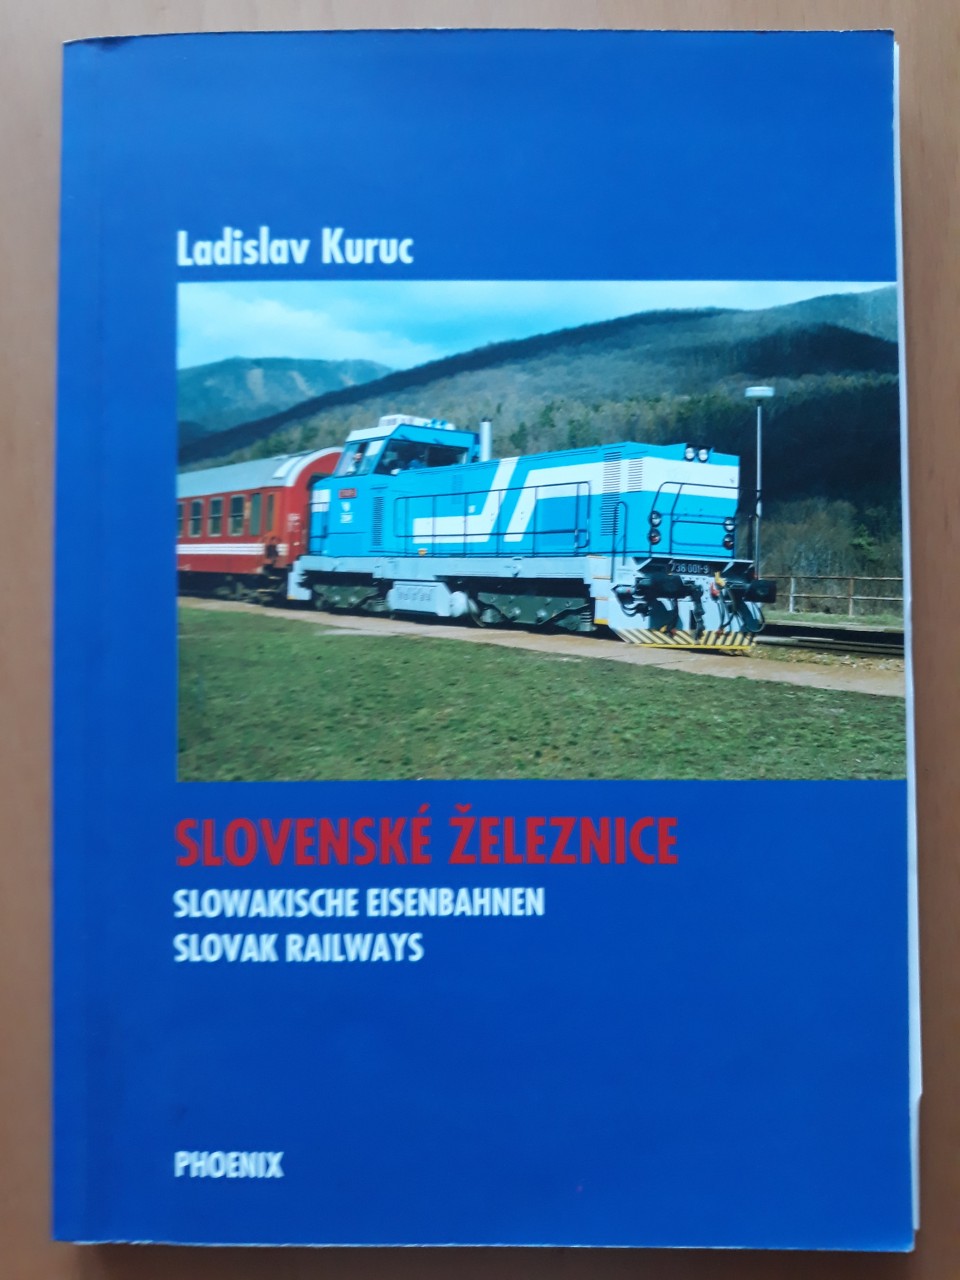 Slovensk eleznice - Ladislav Kuruc 2001